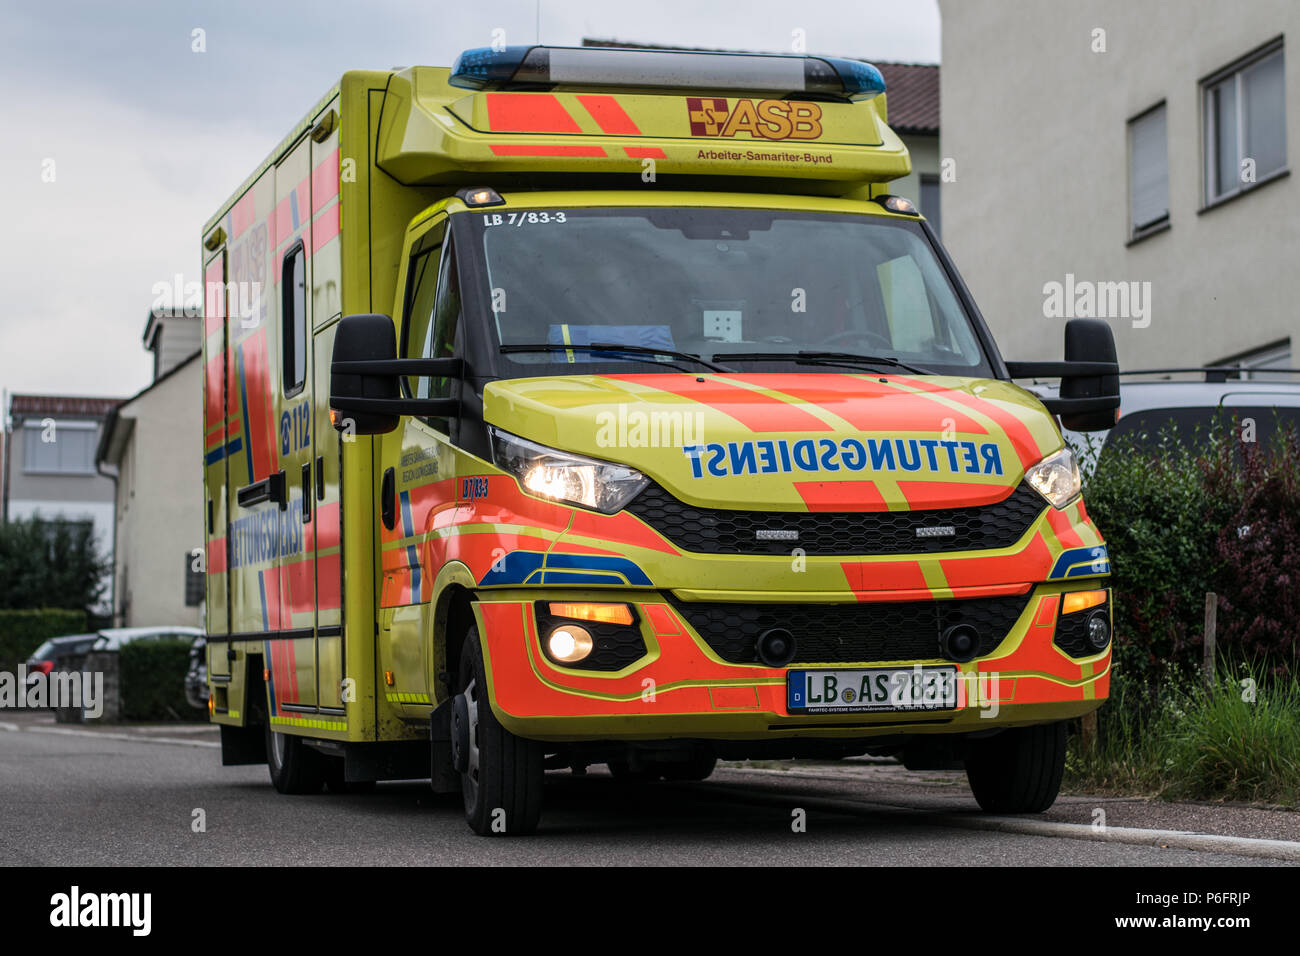 ASB im Einsatz des Rettungswagen - ambulancia durante un emergancy Foto de stock